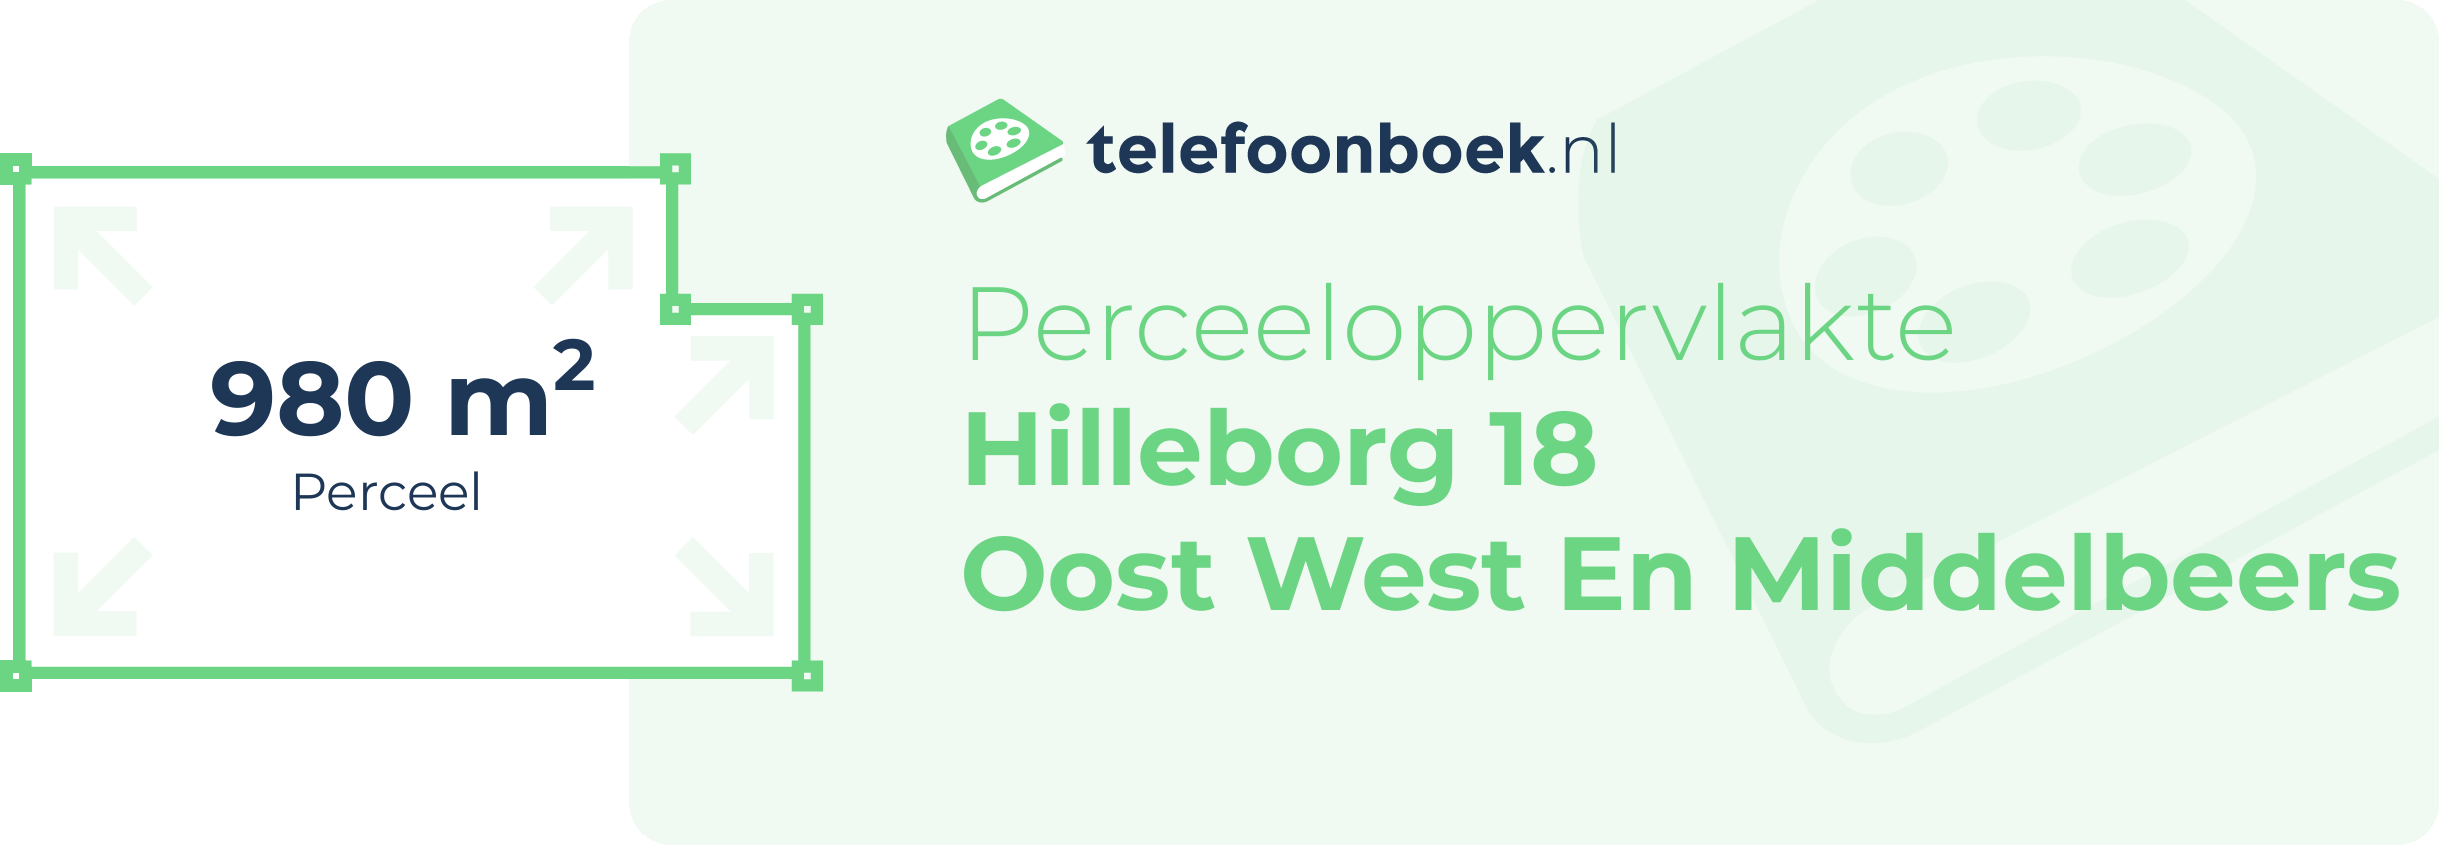 Perceeloppervlakte Hilleborg 18 Oost West En Middelbeers